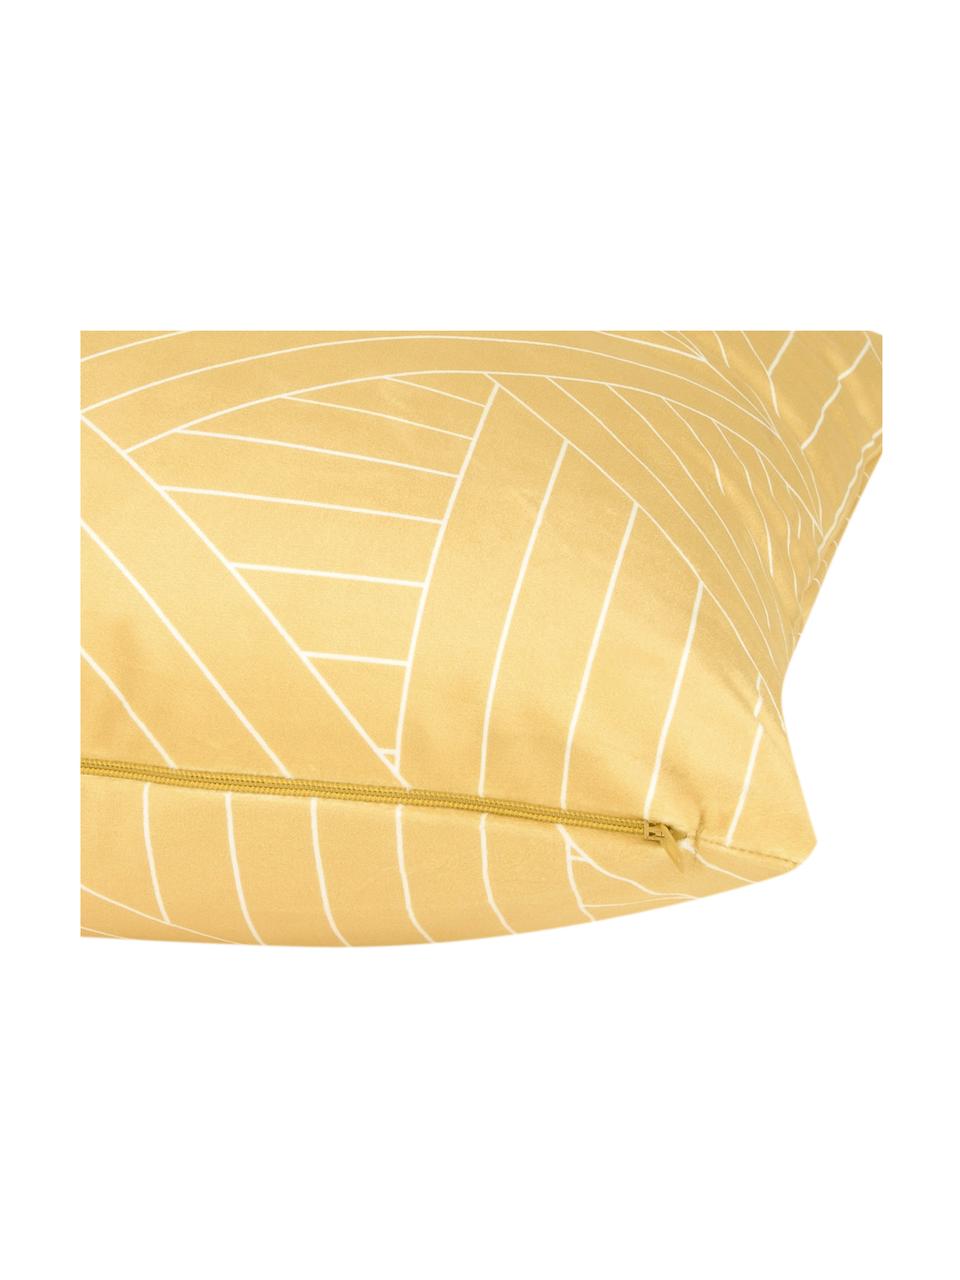 Poszewka na poduszkę z aksamitu Remi, 100% aksamit poliestrowy, Żółty, S 40 x D 40 cm